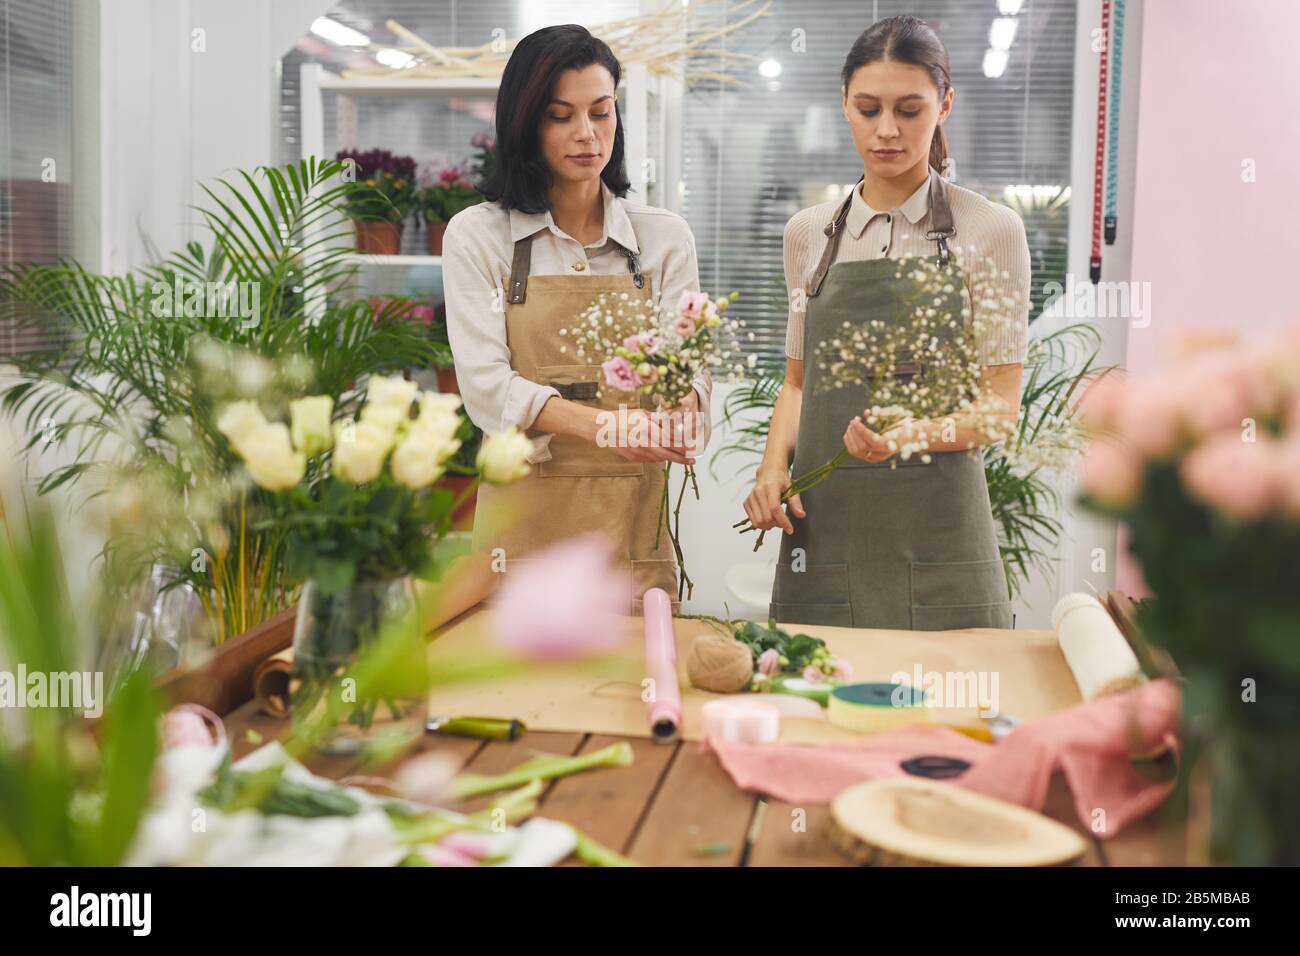 Taille hoch Porträt von zwei kreativen jungen Frauen, die Blumensträuße und Blumenkostümchen arrangieren, während sie in Blumenladen arbeiten, Kopier Raum Stockfoto